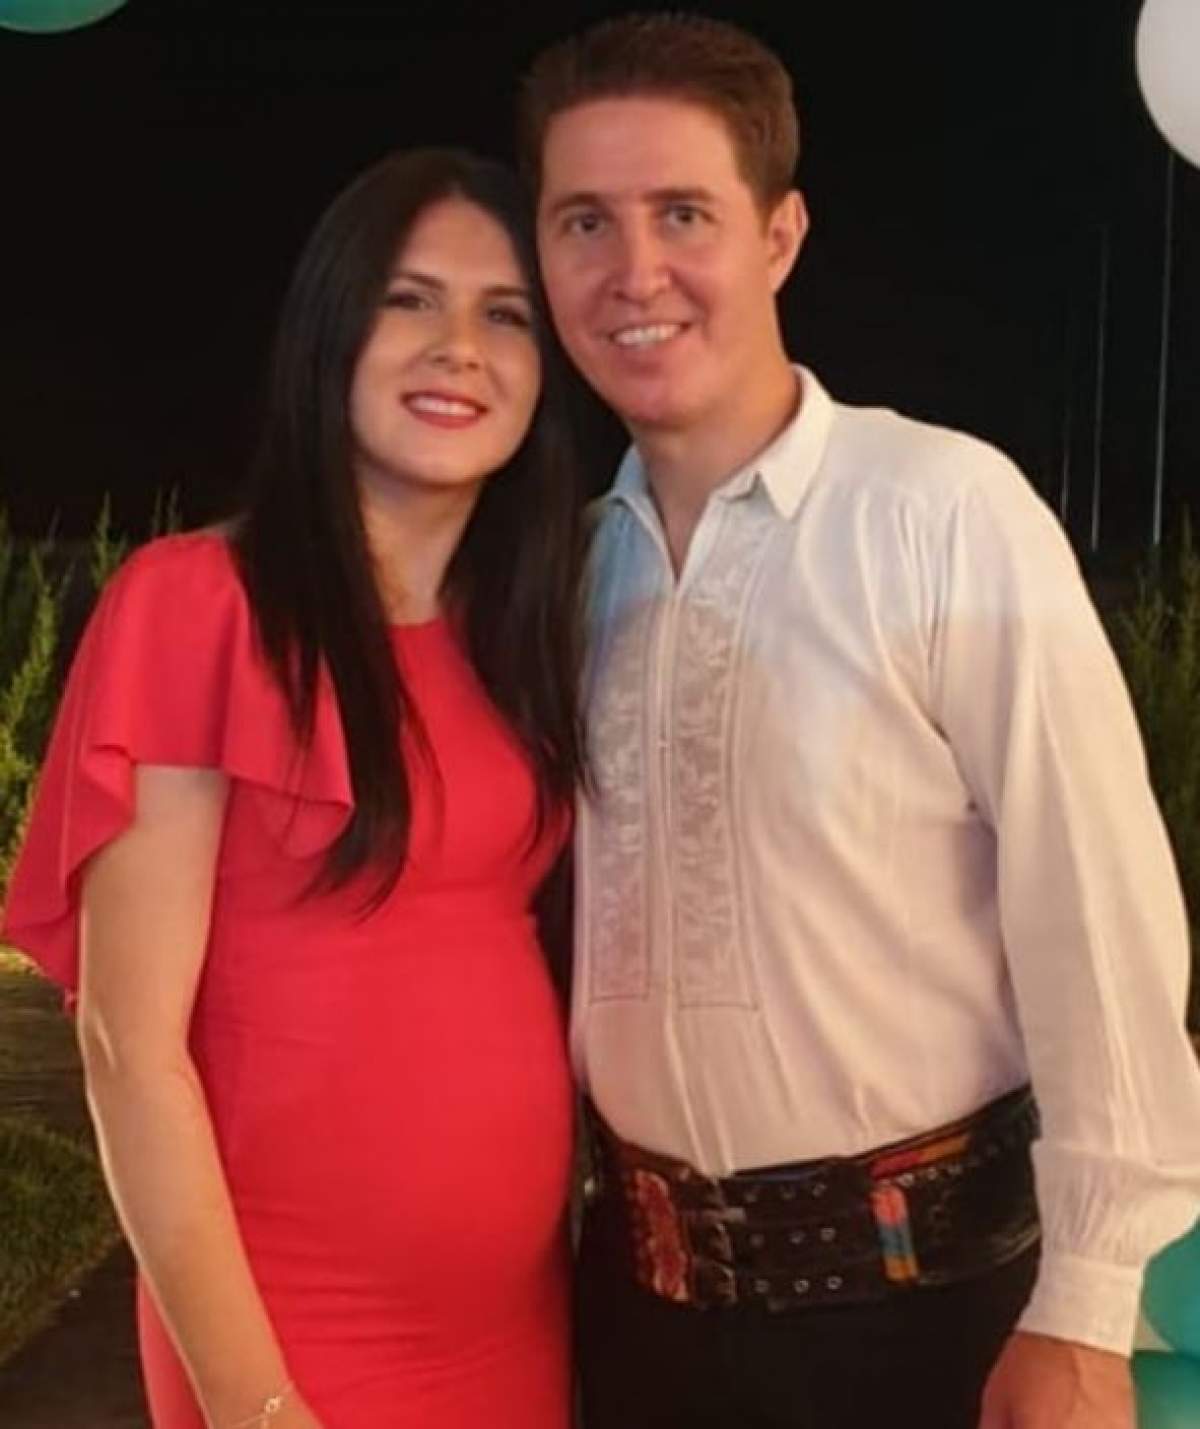 Iubita lui Nicușor Iordan este însărcinată în patru luni și urmează să nască în decembrie